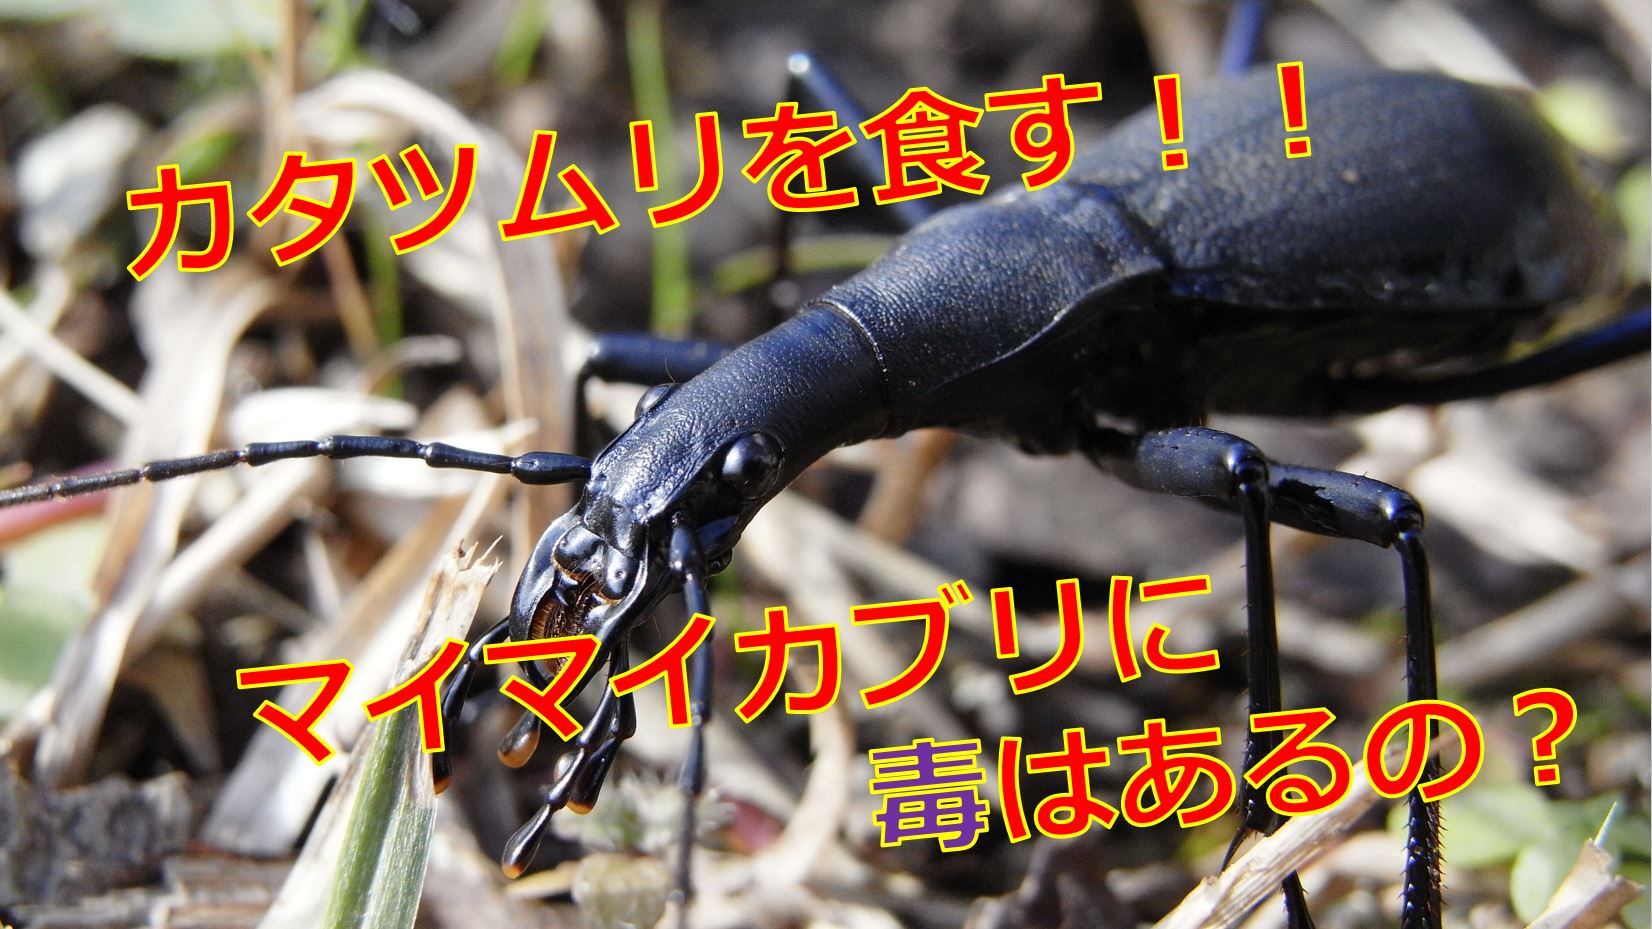 マイマイカブリは毒を持っている 臭い液で失明する危険性はあるの 生物モラトリアム